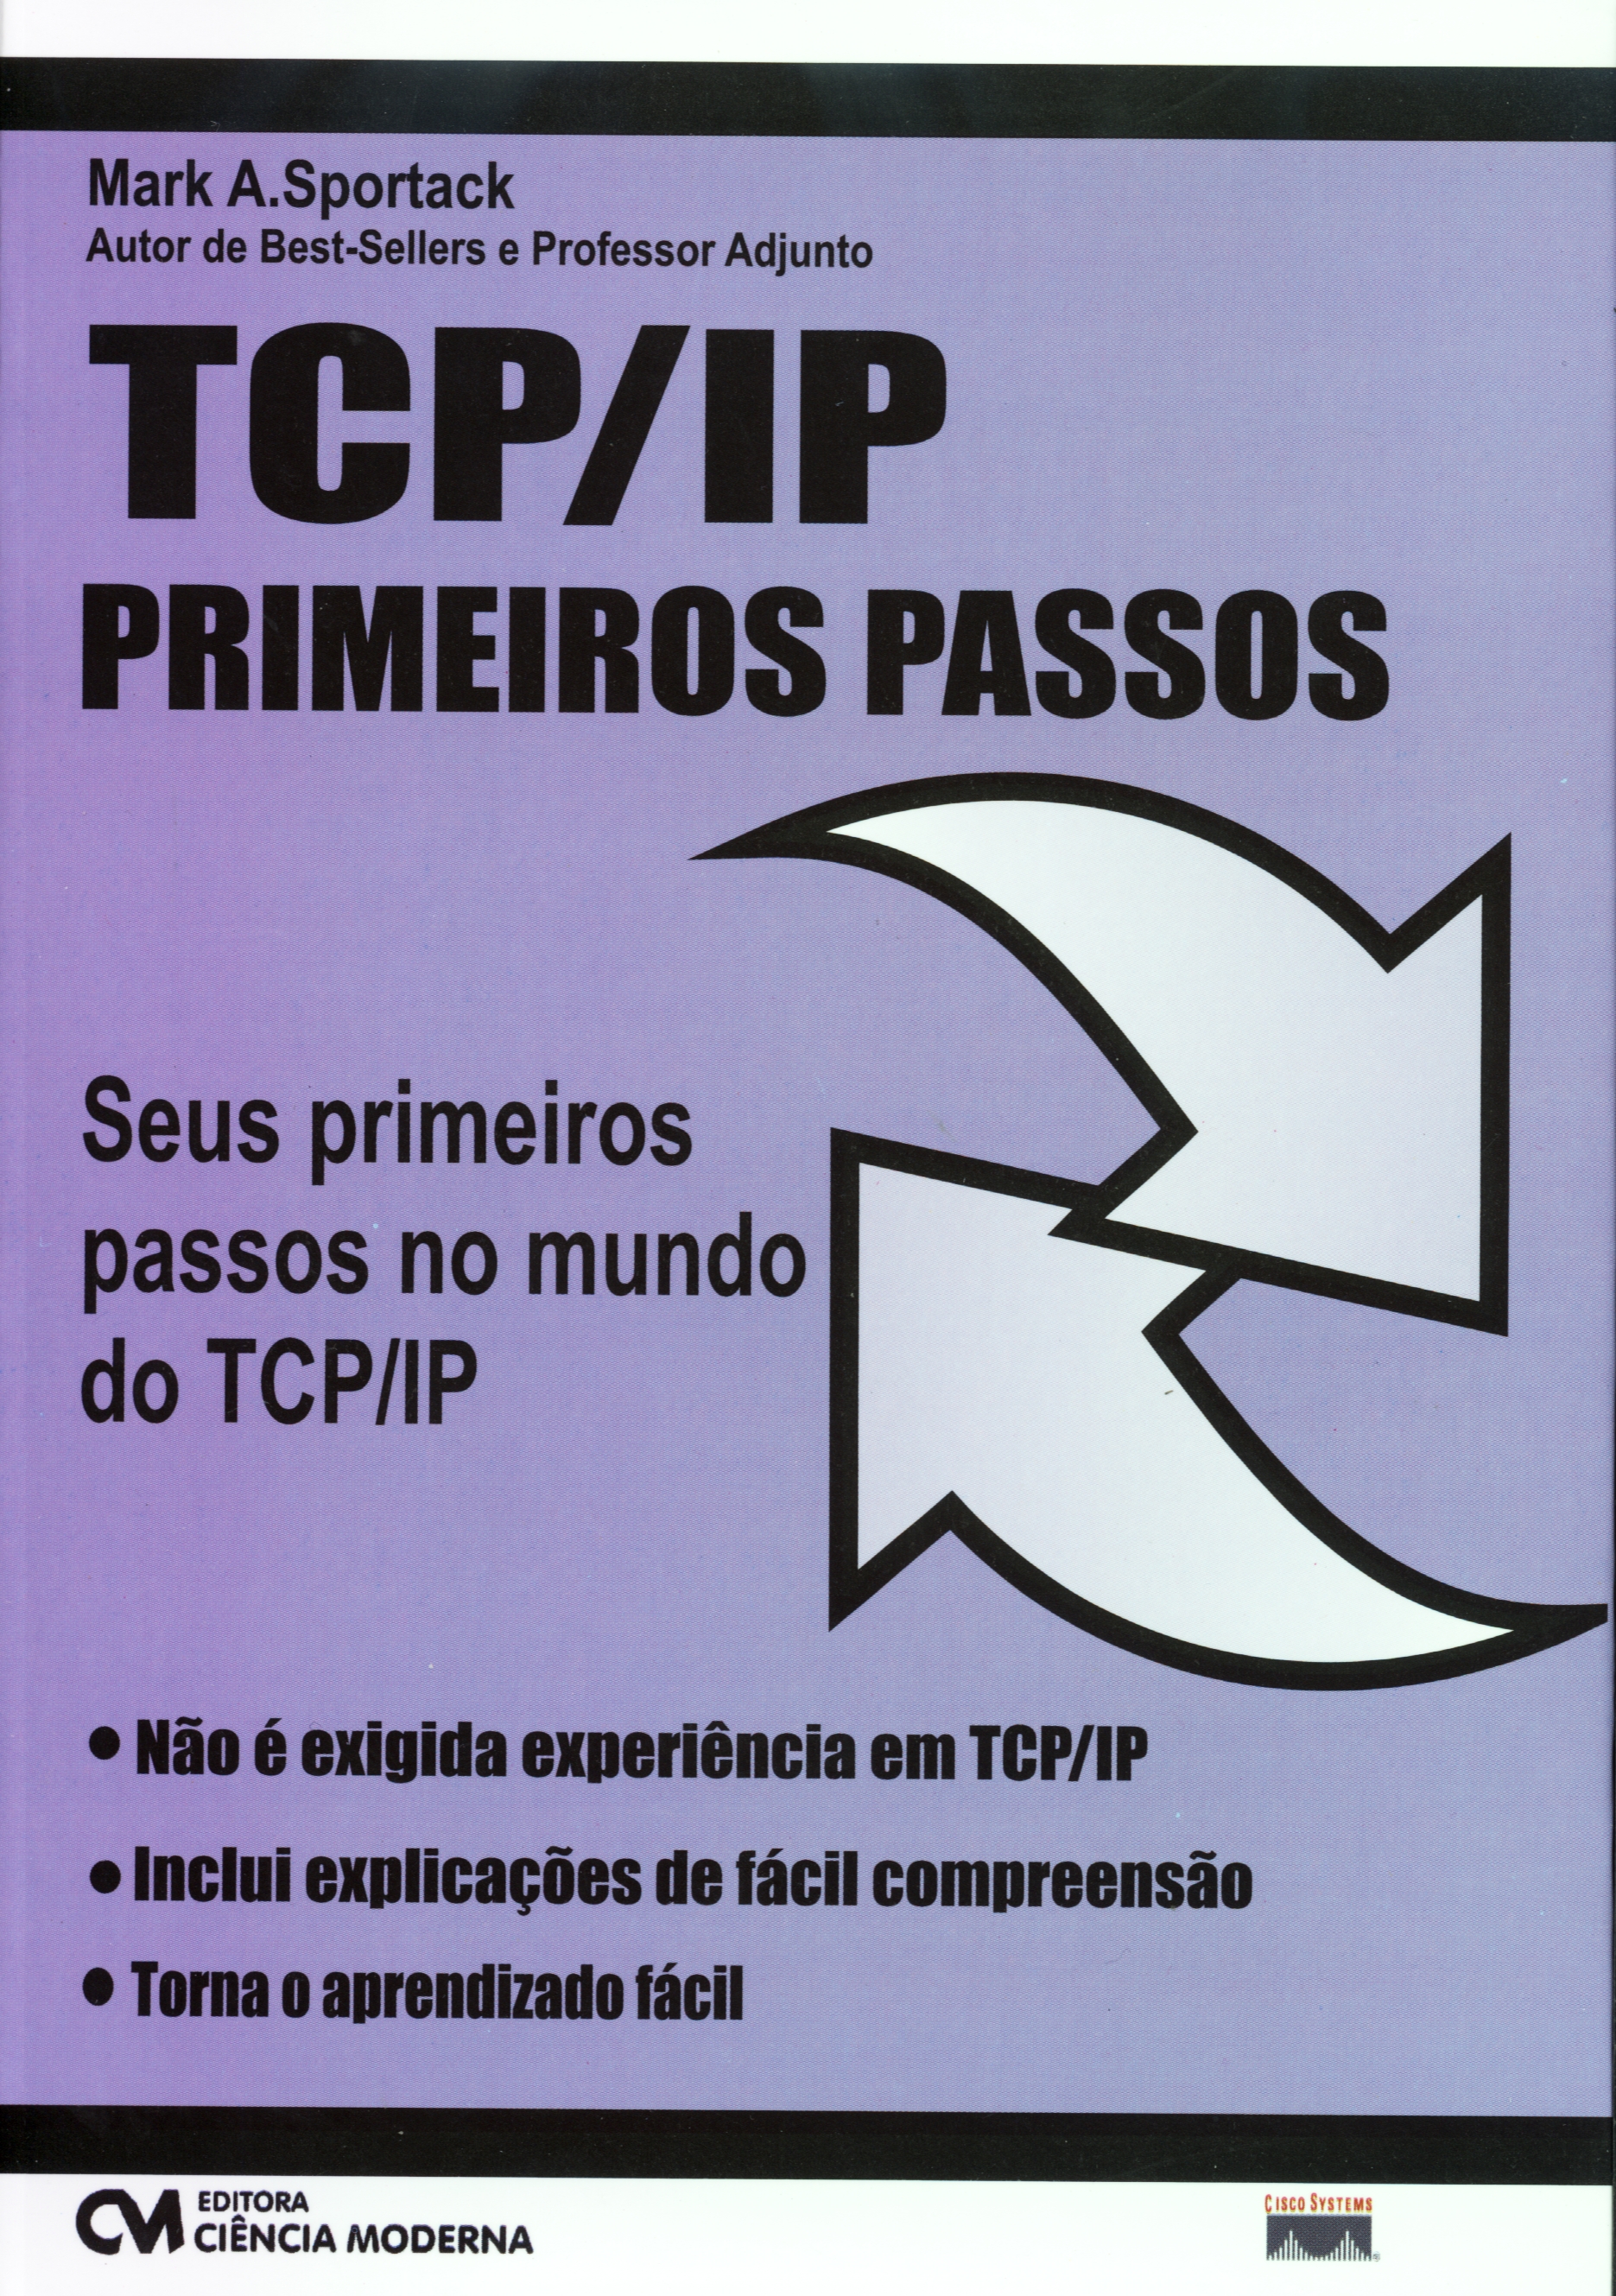 TCP/IP Primeiros Passos